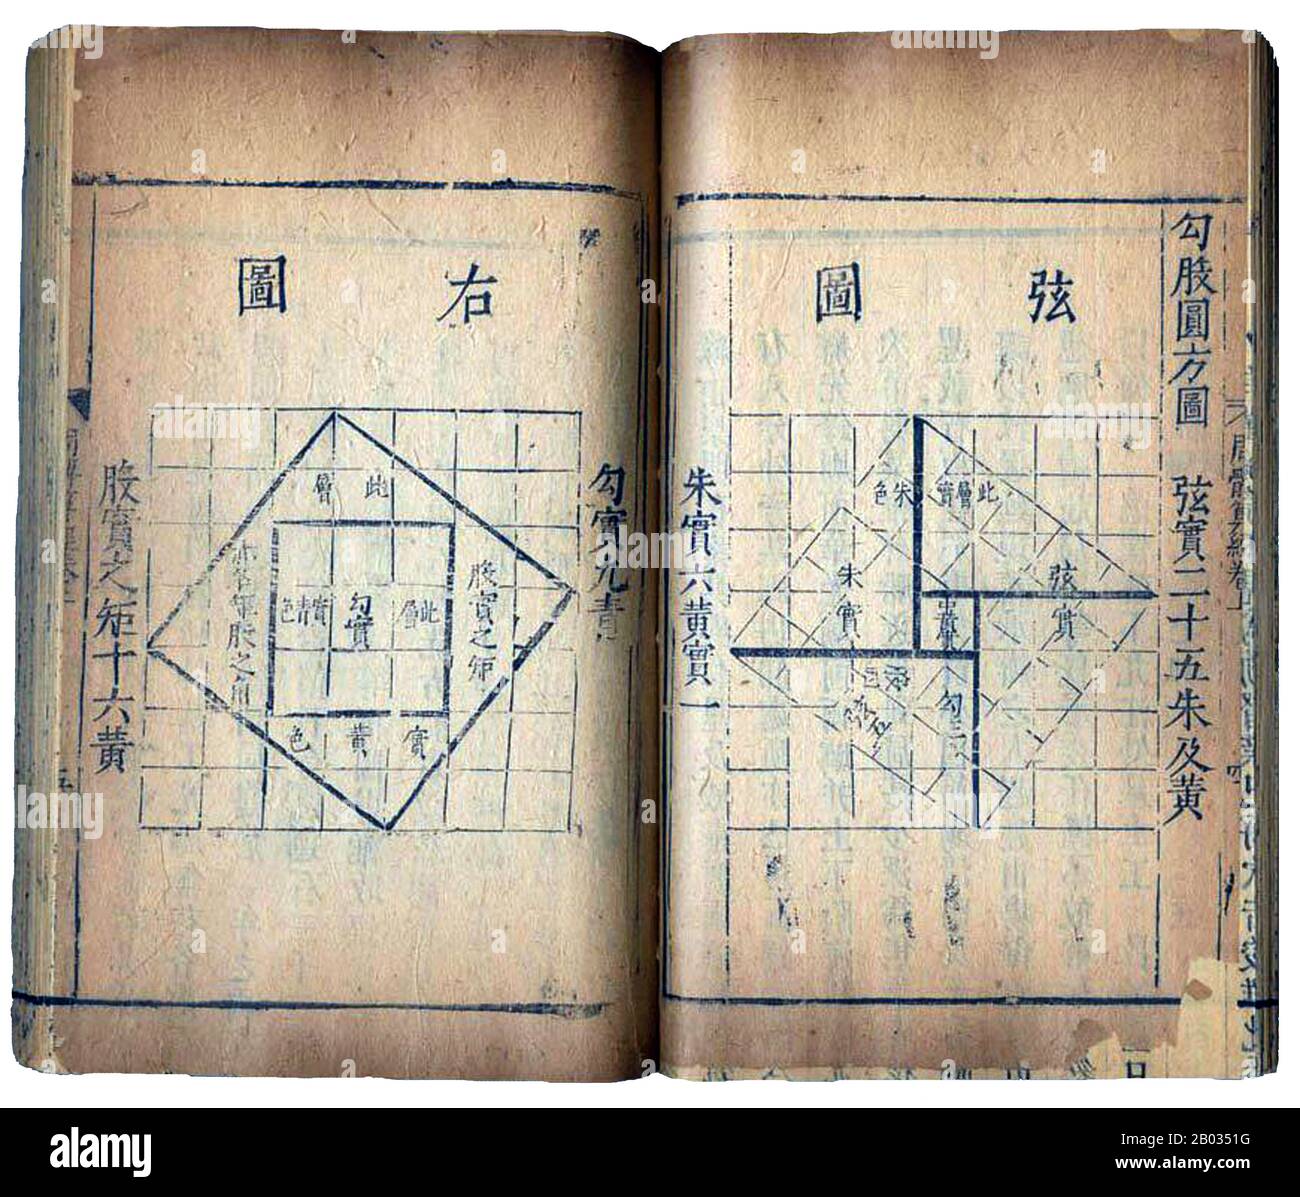 Il Zhou Bi Suan Jing, o Chou Pei Suan Ching, è uno dei più antichi testi matematici cinesi. 'Zhou' si riferisce all'antica dinastia Zhou (c. 1046 - 256 BCE) 'Bi' si riferisce allo gnomone di una meridiana. Lo studio è una raccolta anonima di 246 problemi incontrati dal Duca di Zhou e dal suo astronomo e matematico, Shang Gao. Ogni domanda ha indicato la loro risposta numerica e il corrispondente algoritmo aritmetico. Il Zhoubi suanjing contiene una delle prime prove registrate del teorema di Pitagora. Foto Stock